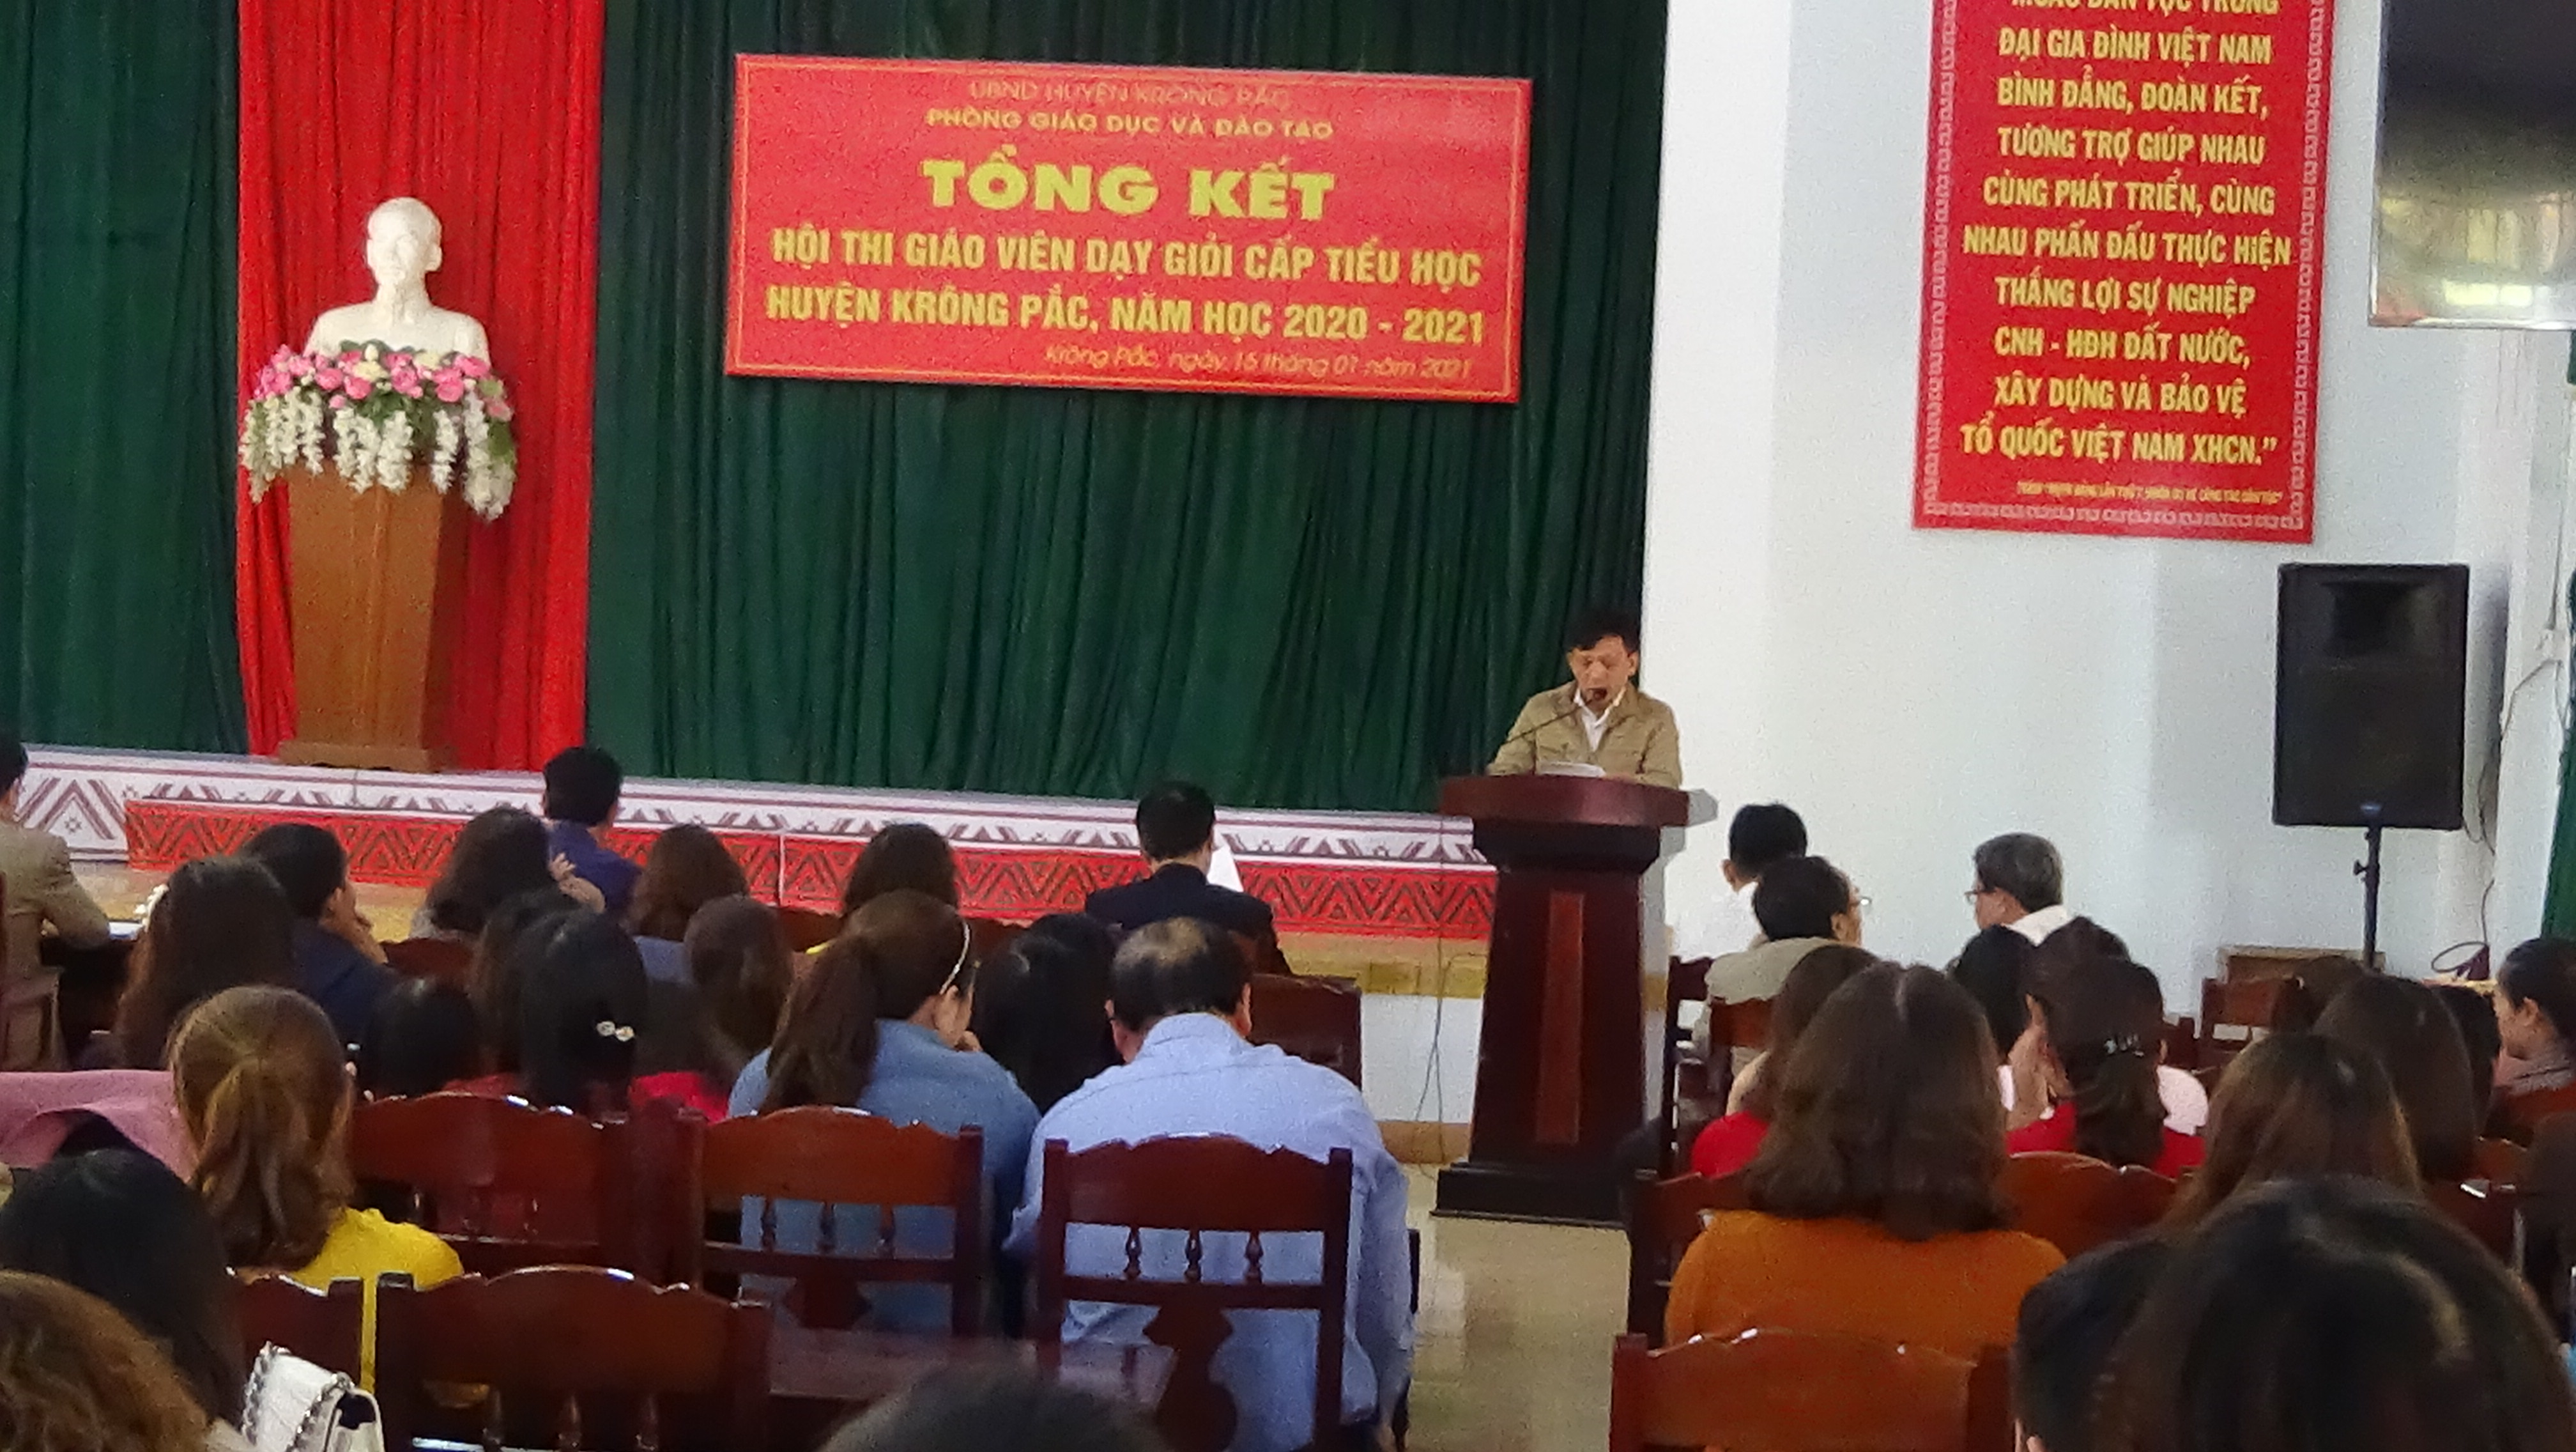 Tổng kết hội thi Giáo viên dạy giỏi cấp tiểu học, huyện Krông Pắc, năm học 2020-2021.